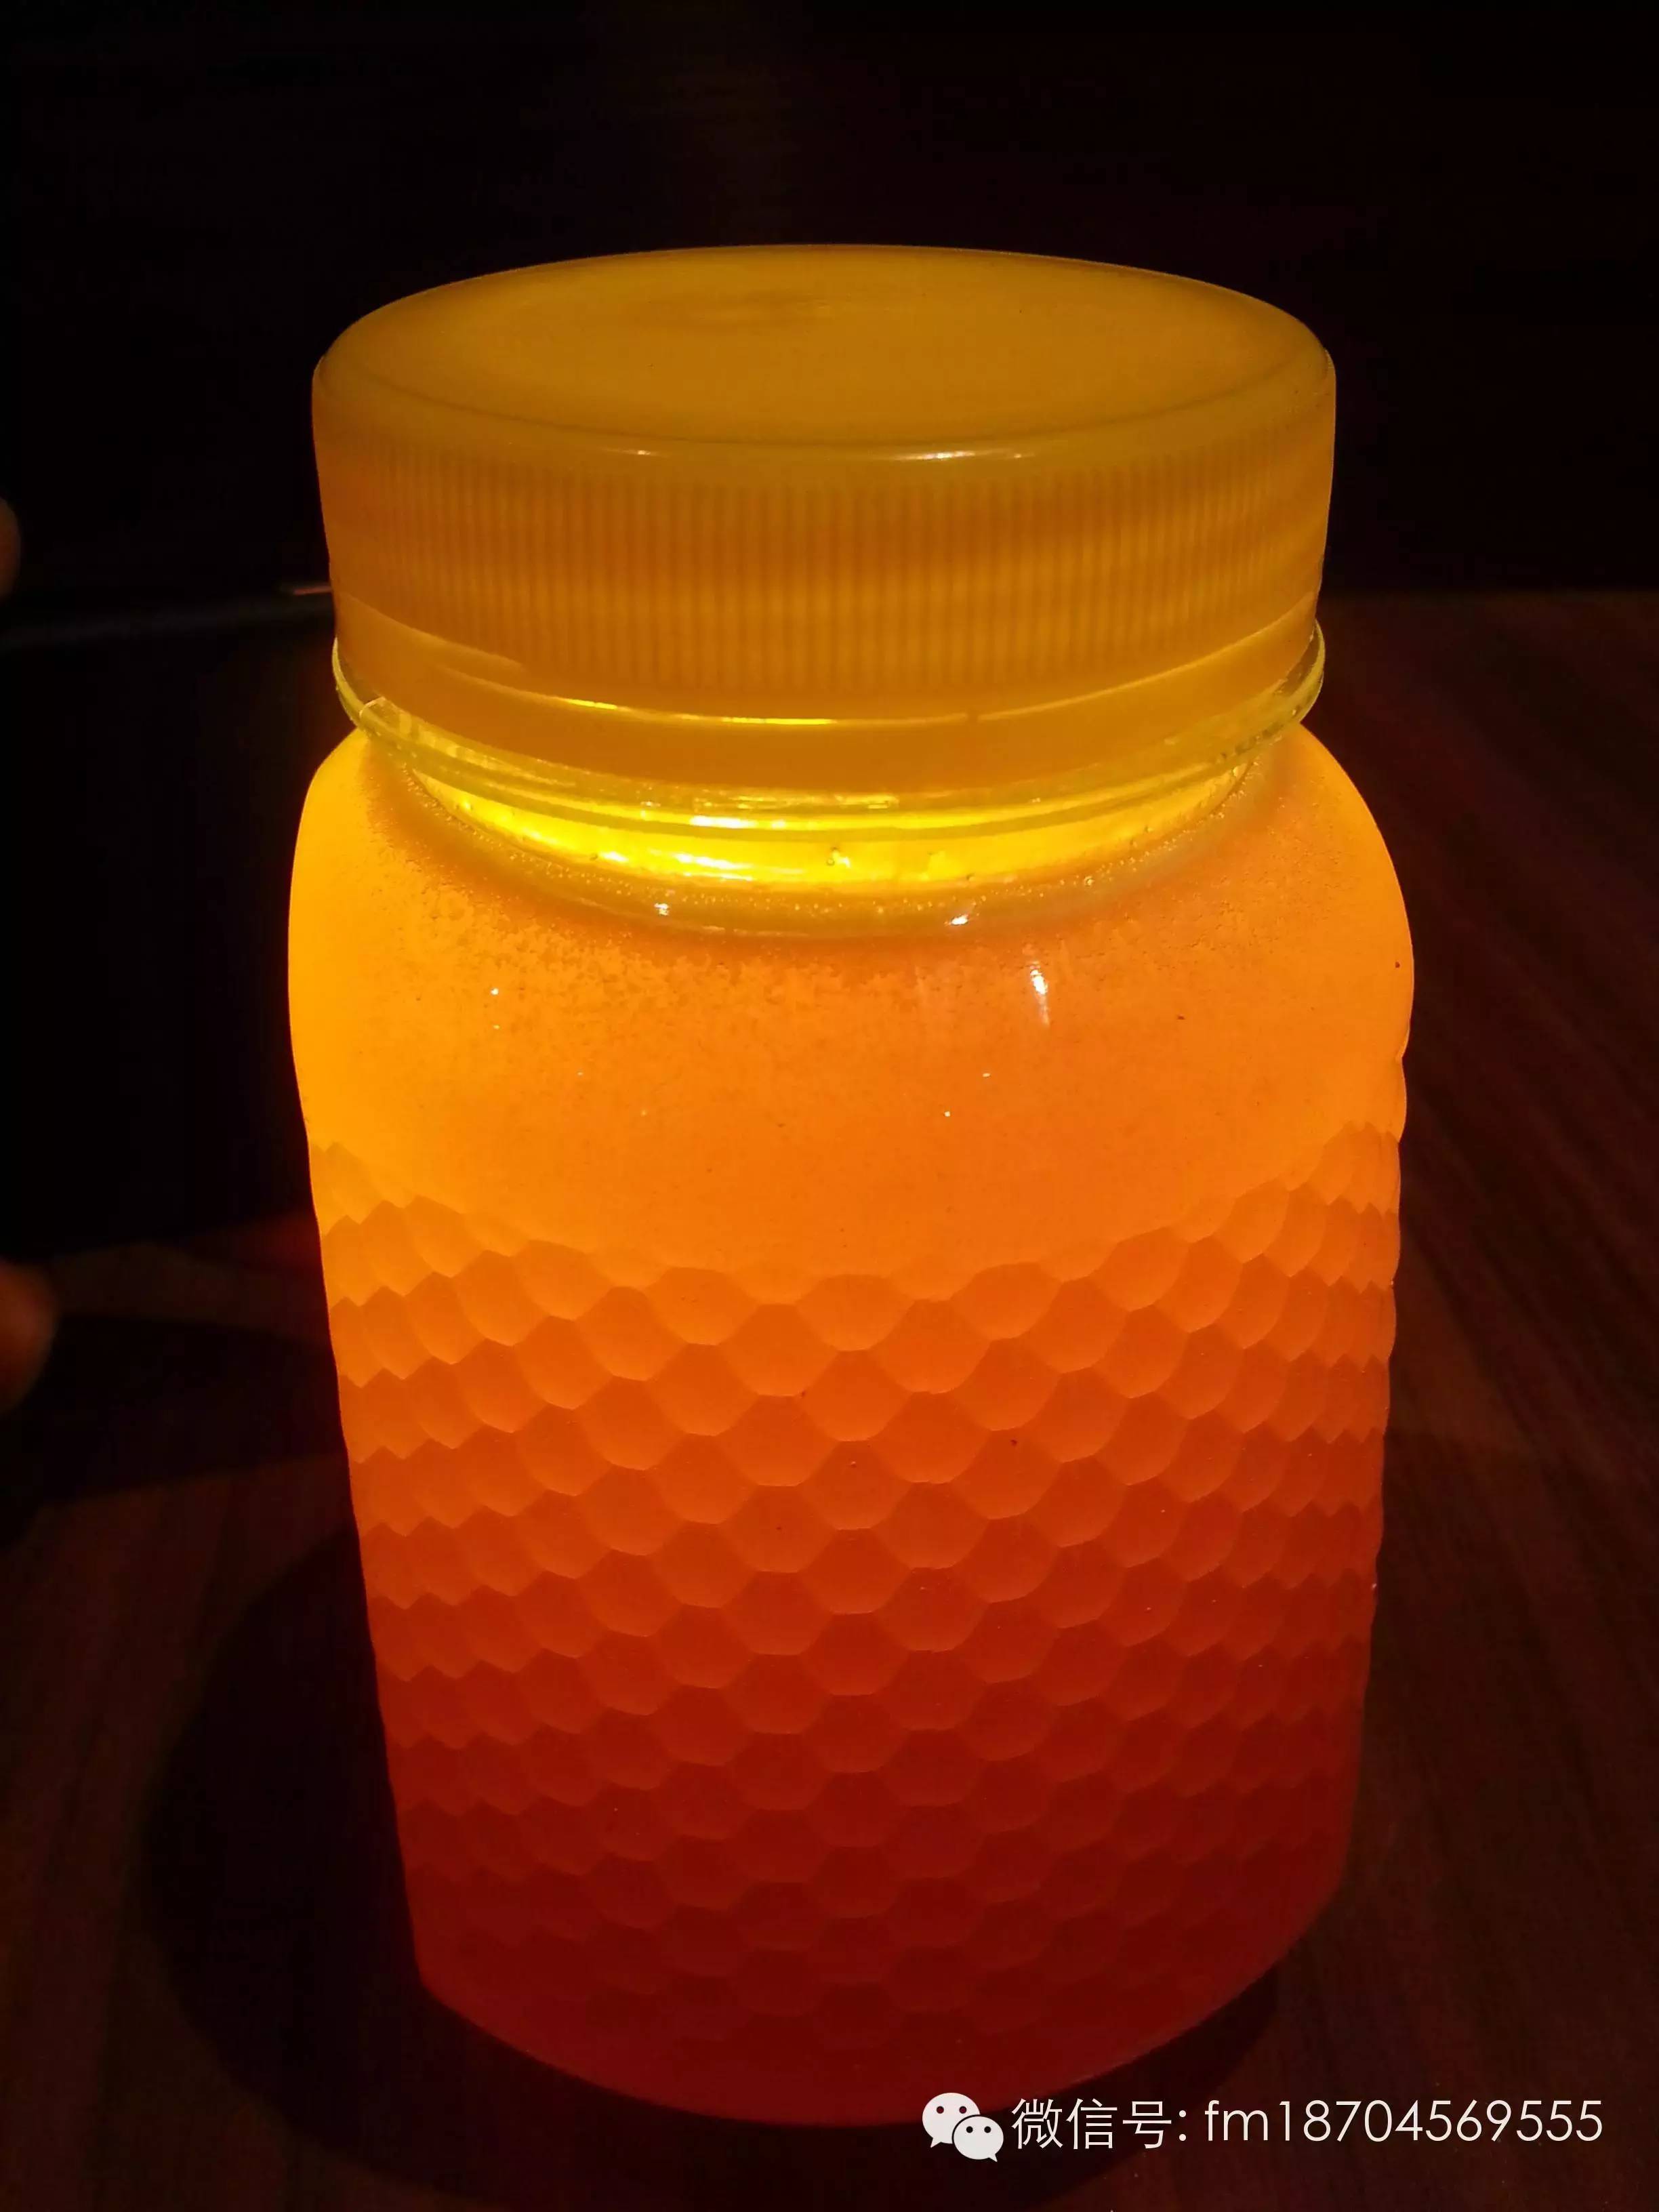 哪个品牌蜂蜜好 小蜂蜜 洋槐蜂蜜多少钱一斤 鸡蛋清蜂蜜敷脸 白醋加蜂蜜